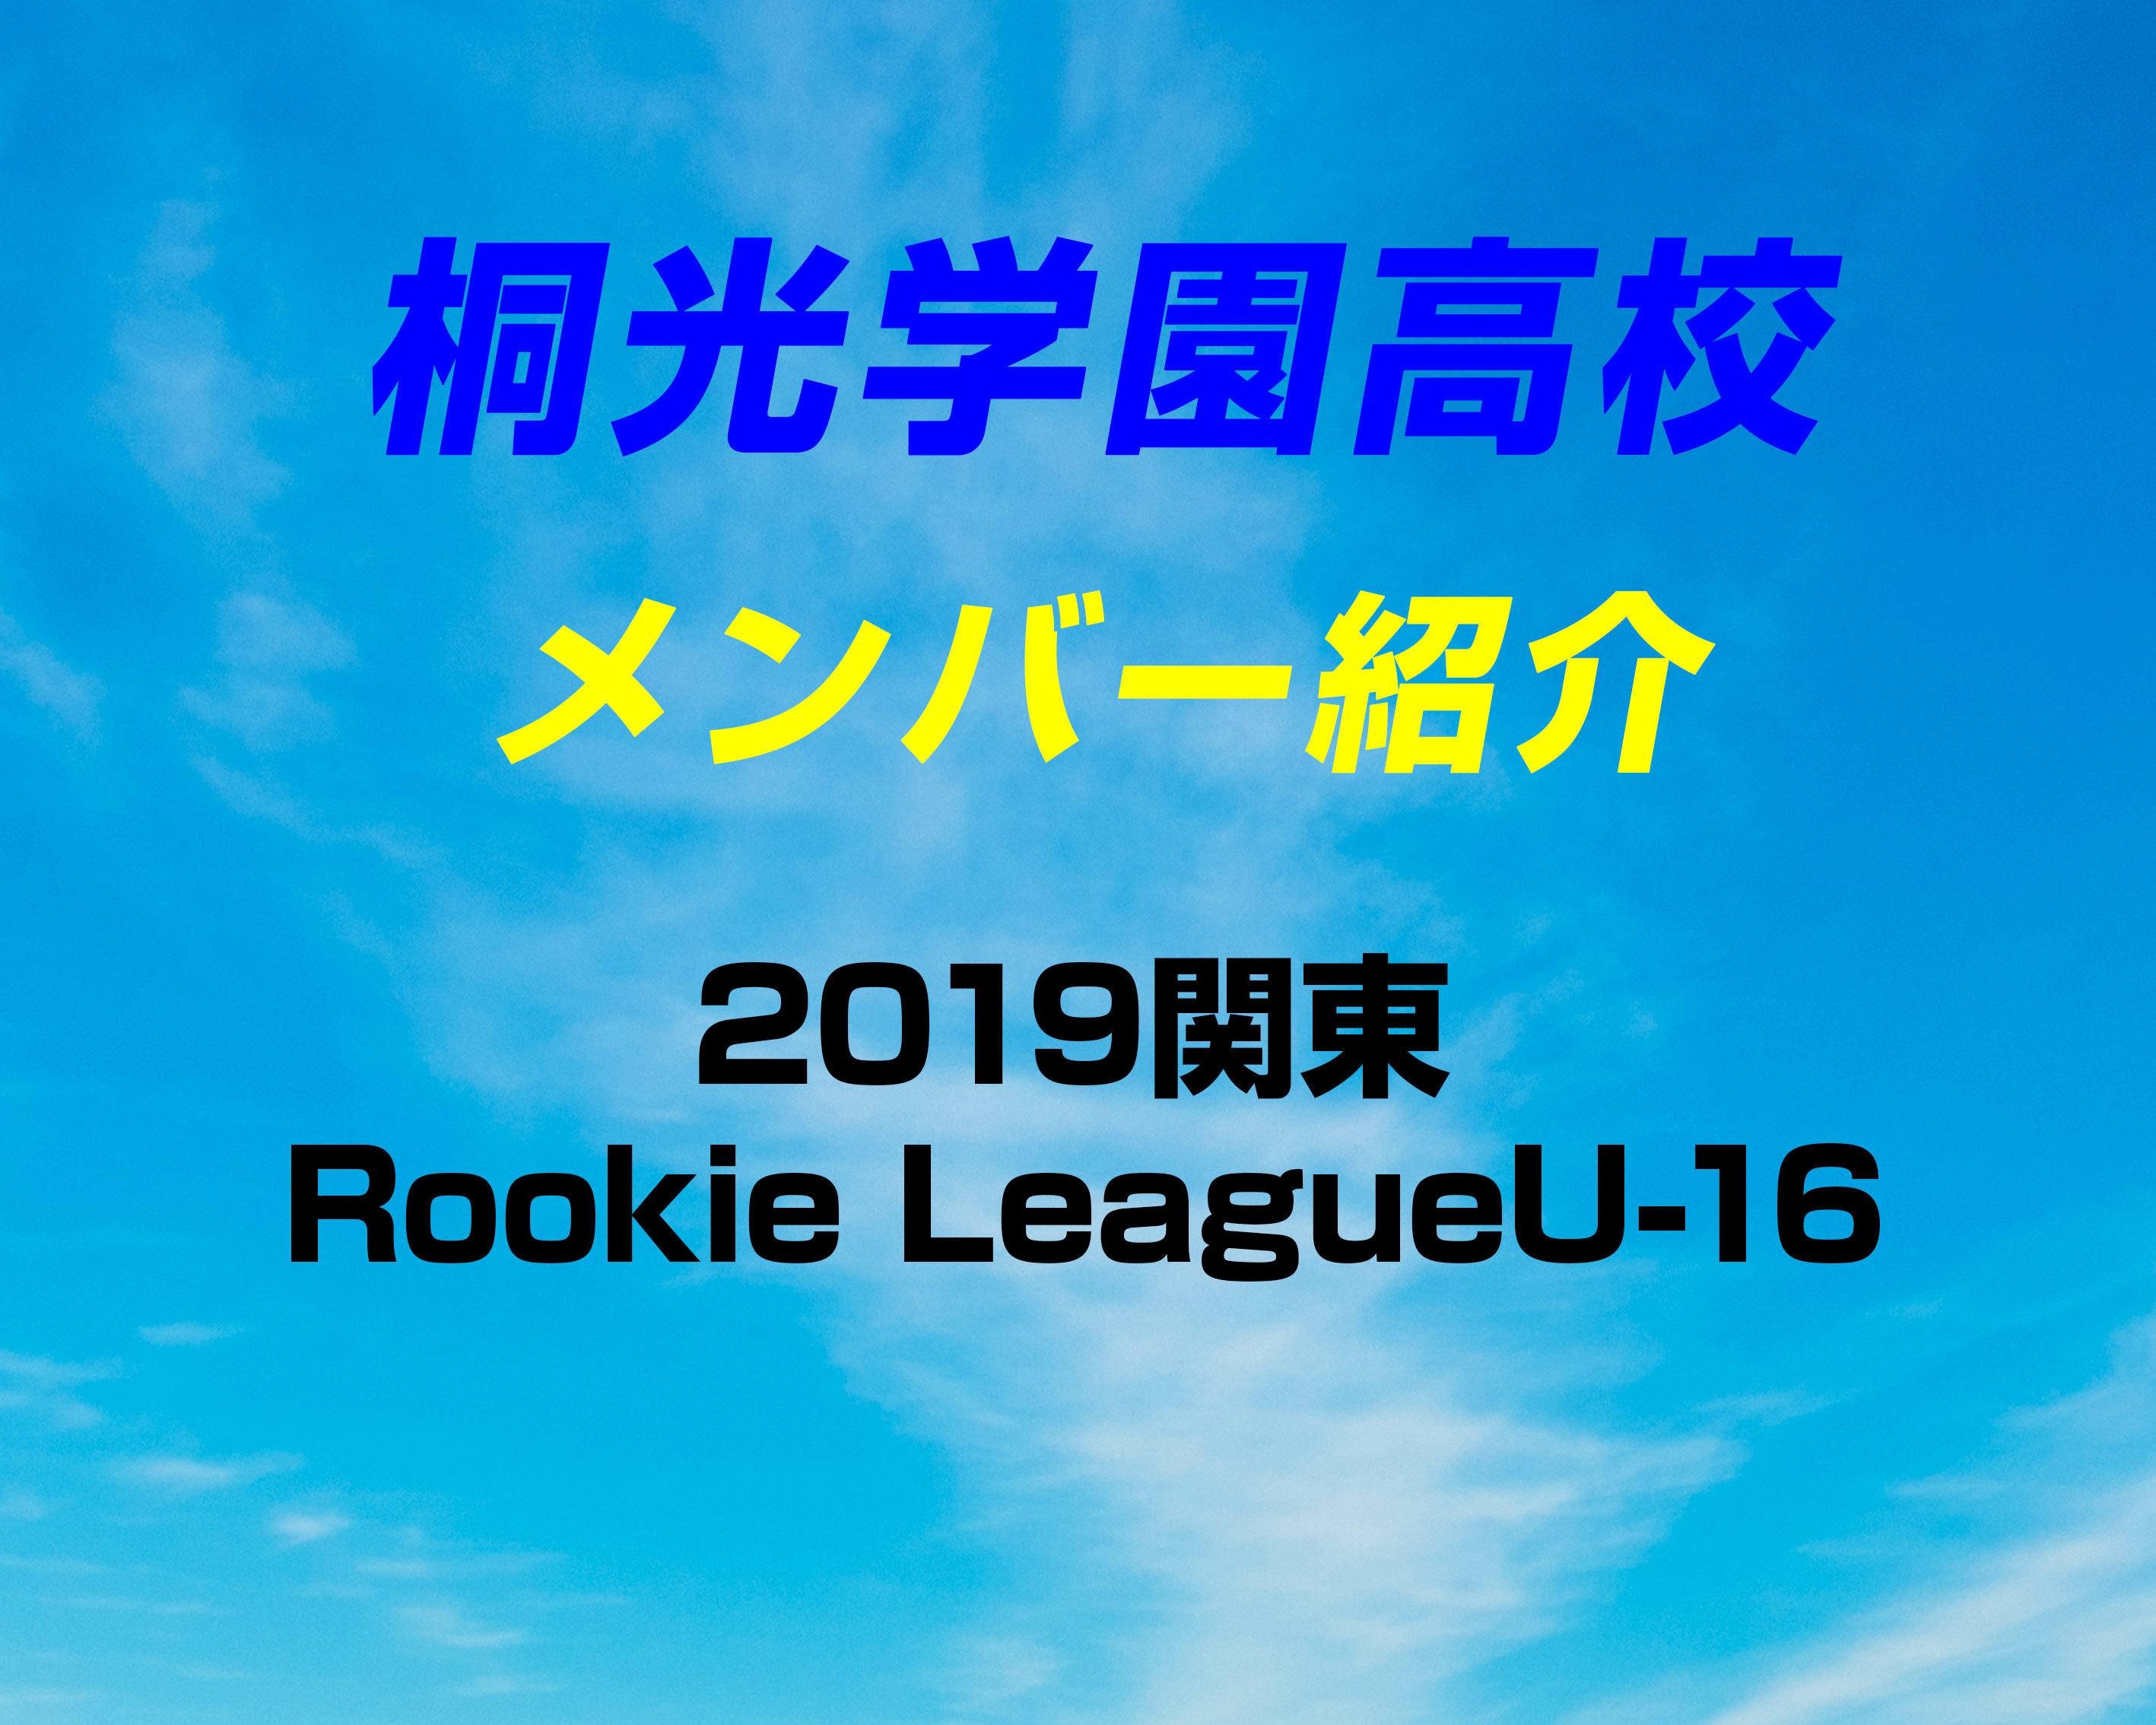 神奈川の強豪 桐光学園高校サッカー部のメンバー紹介 19関東rookie Leagueu 16 ヤンサカ